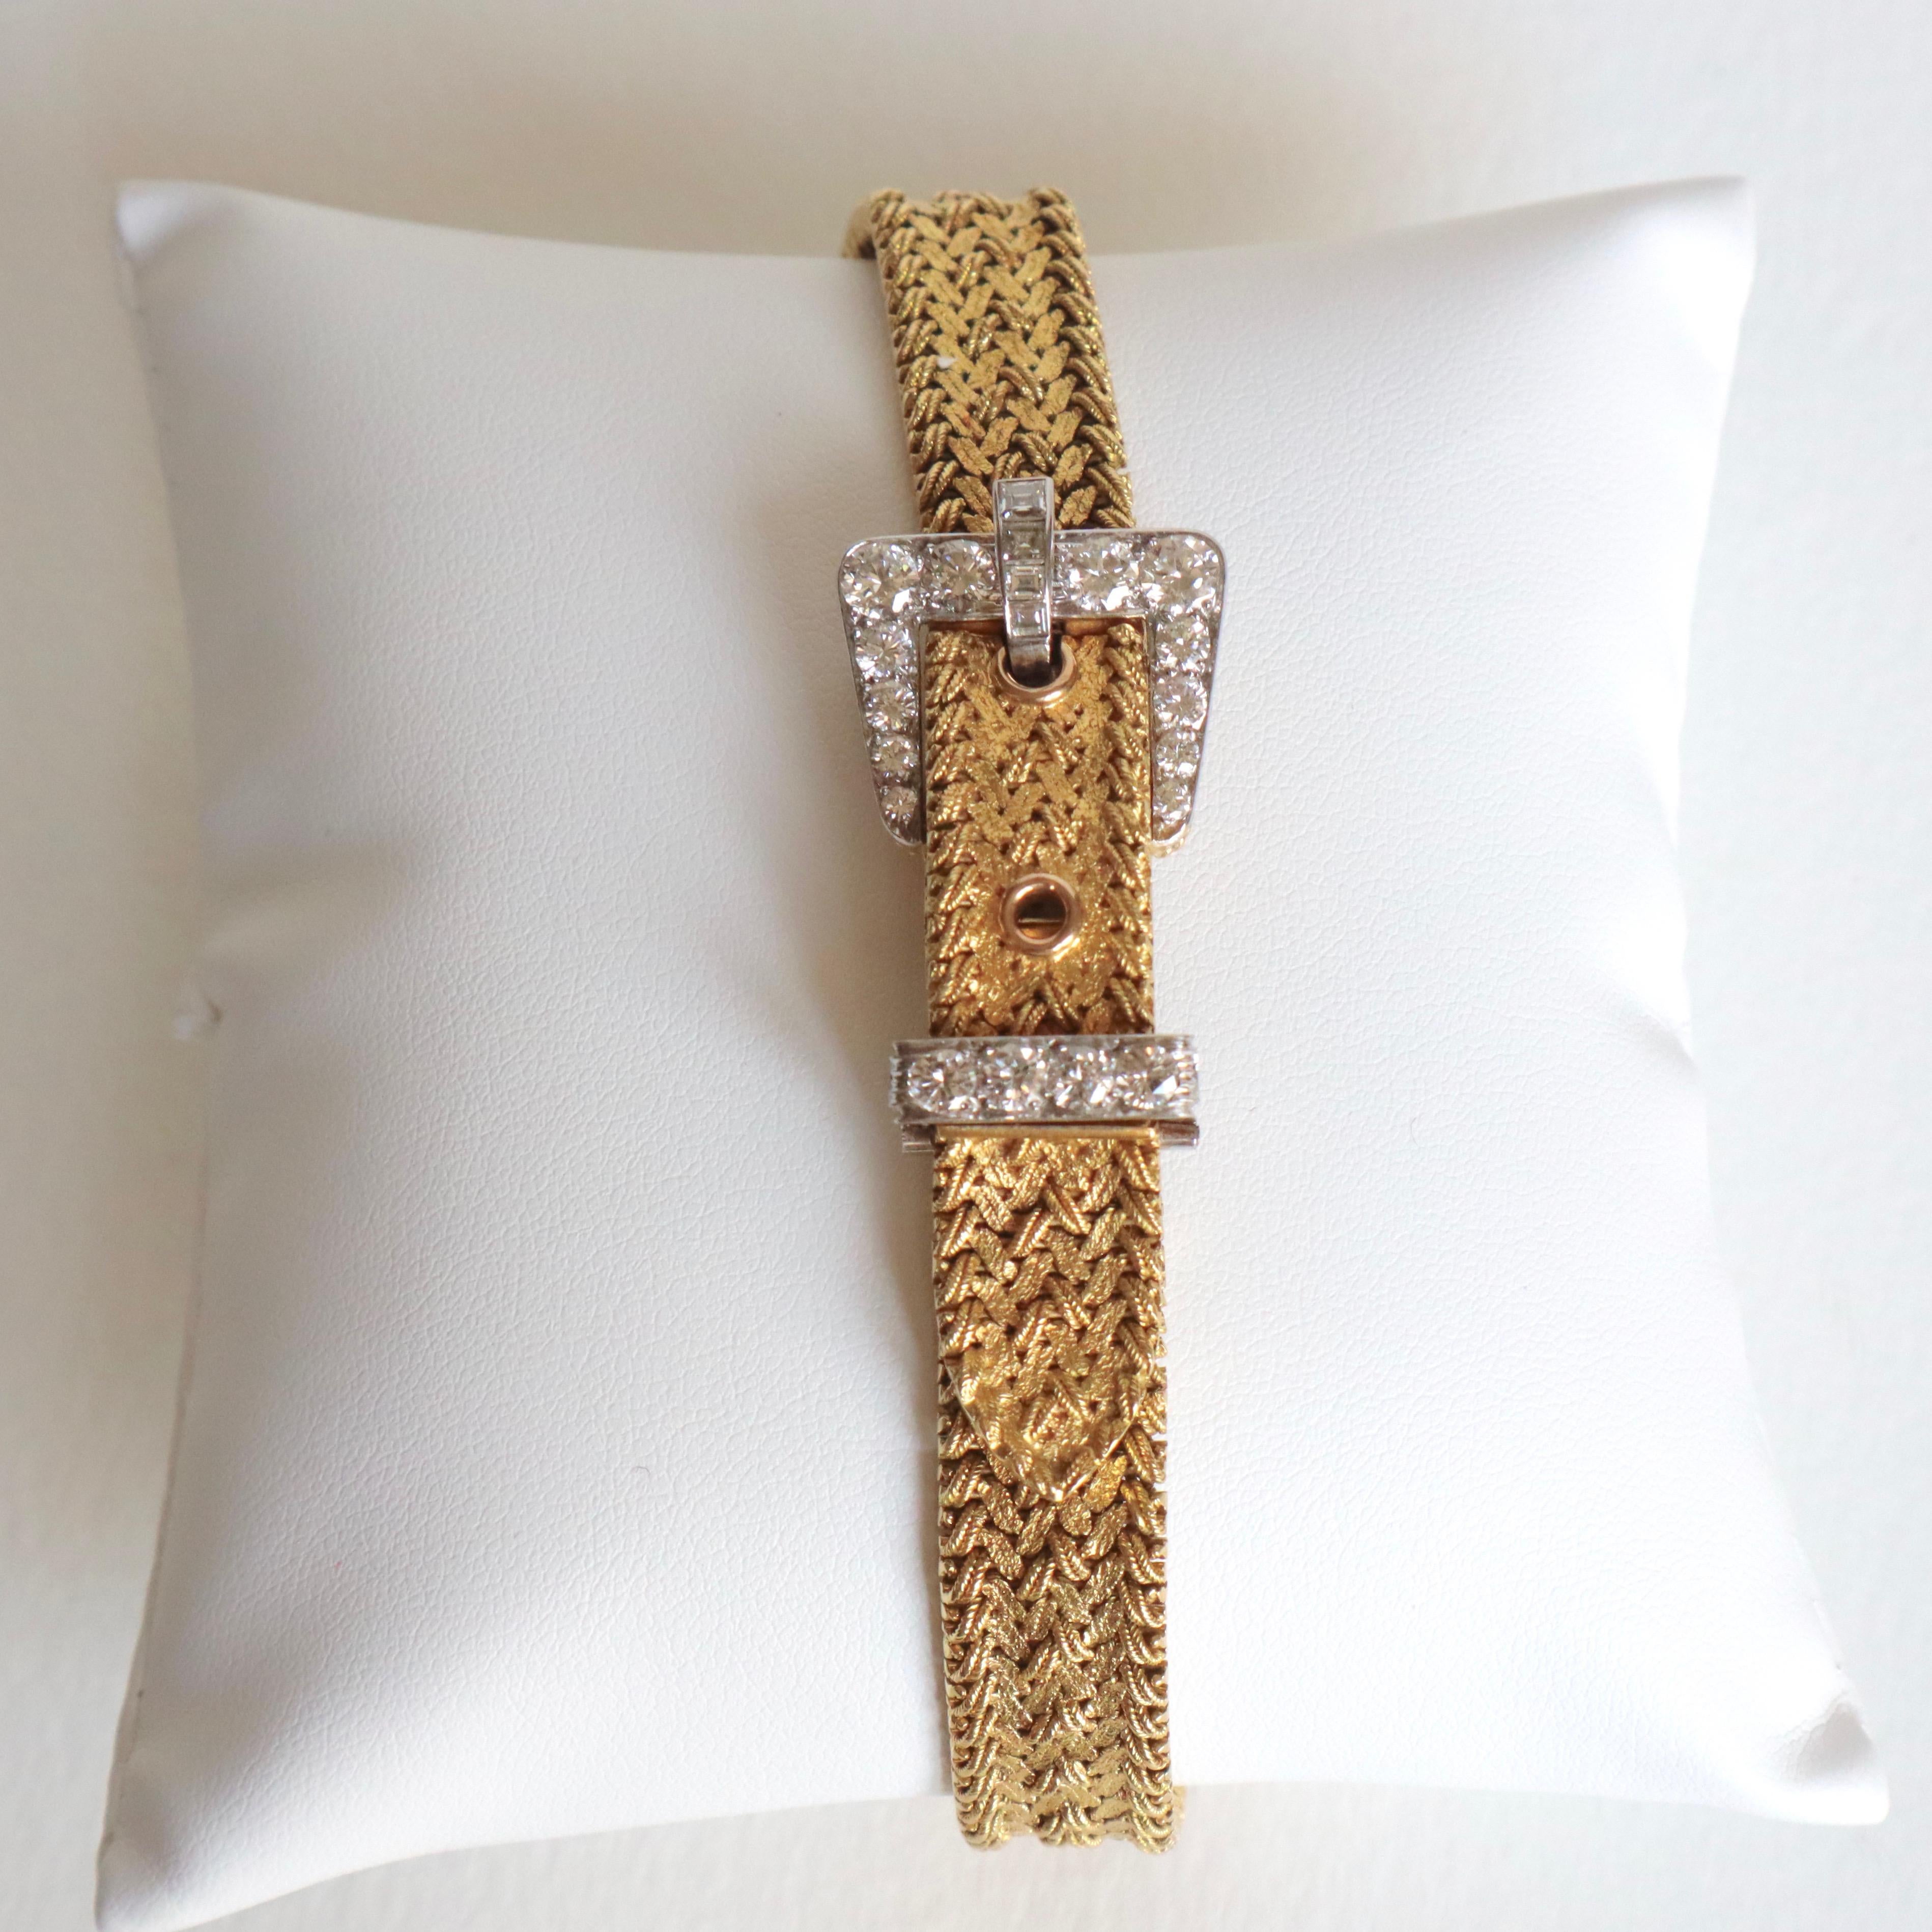 Kutchinsky Women's Secret Bracelet Watch in 18 Karat Gold 3 Carat Diamonds 2